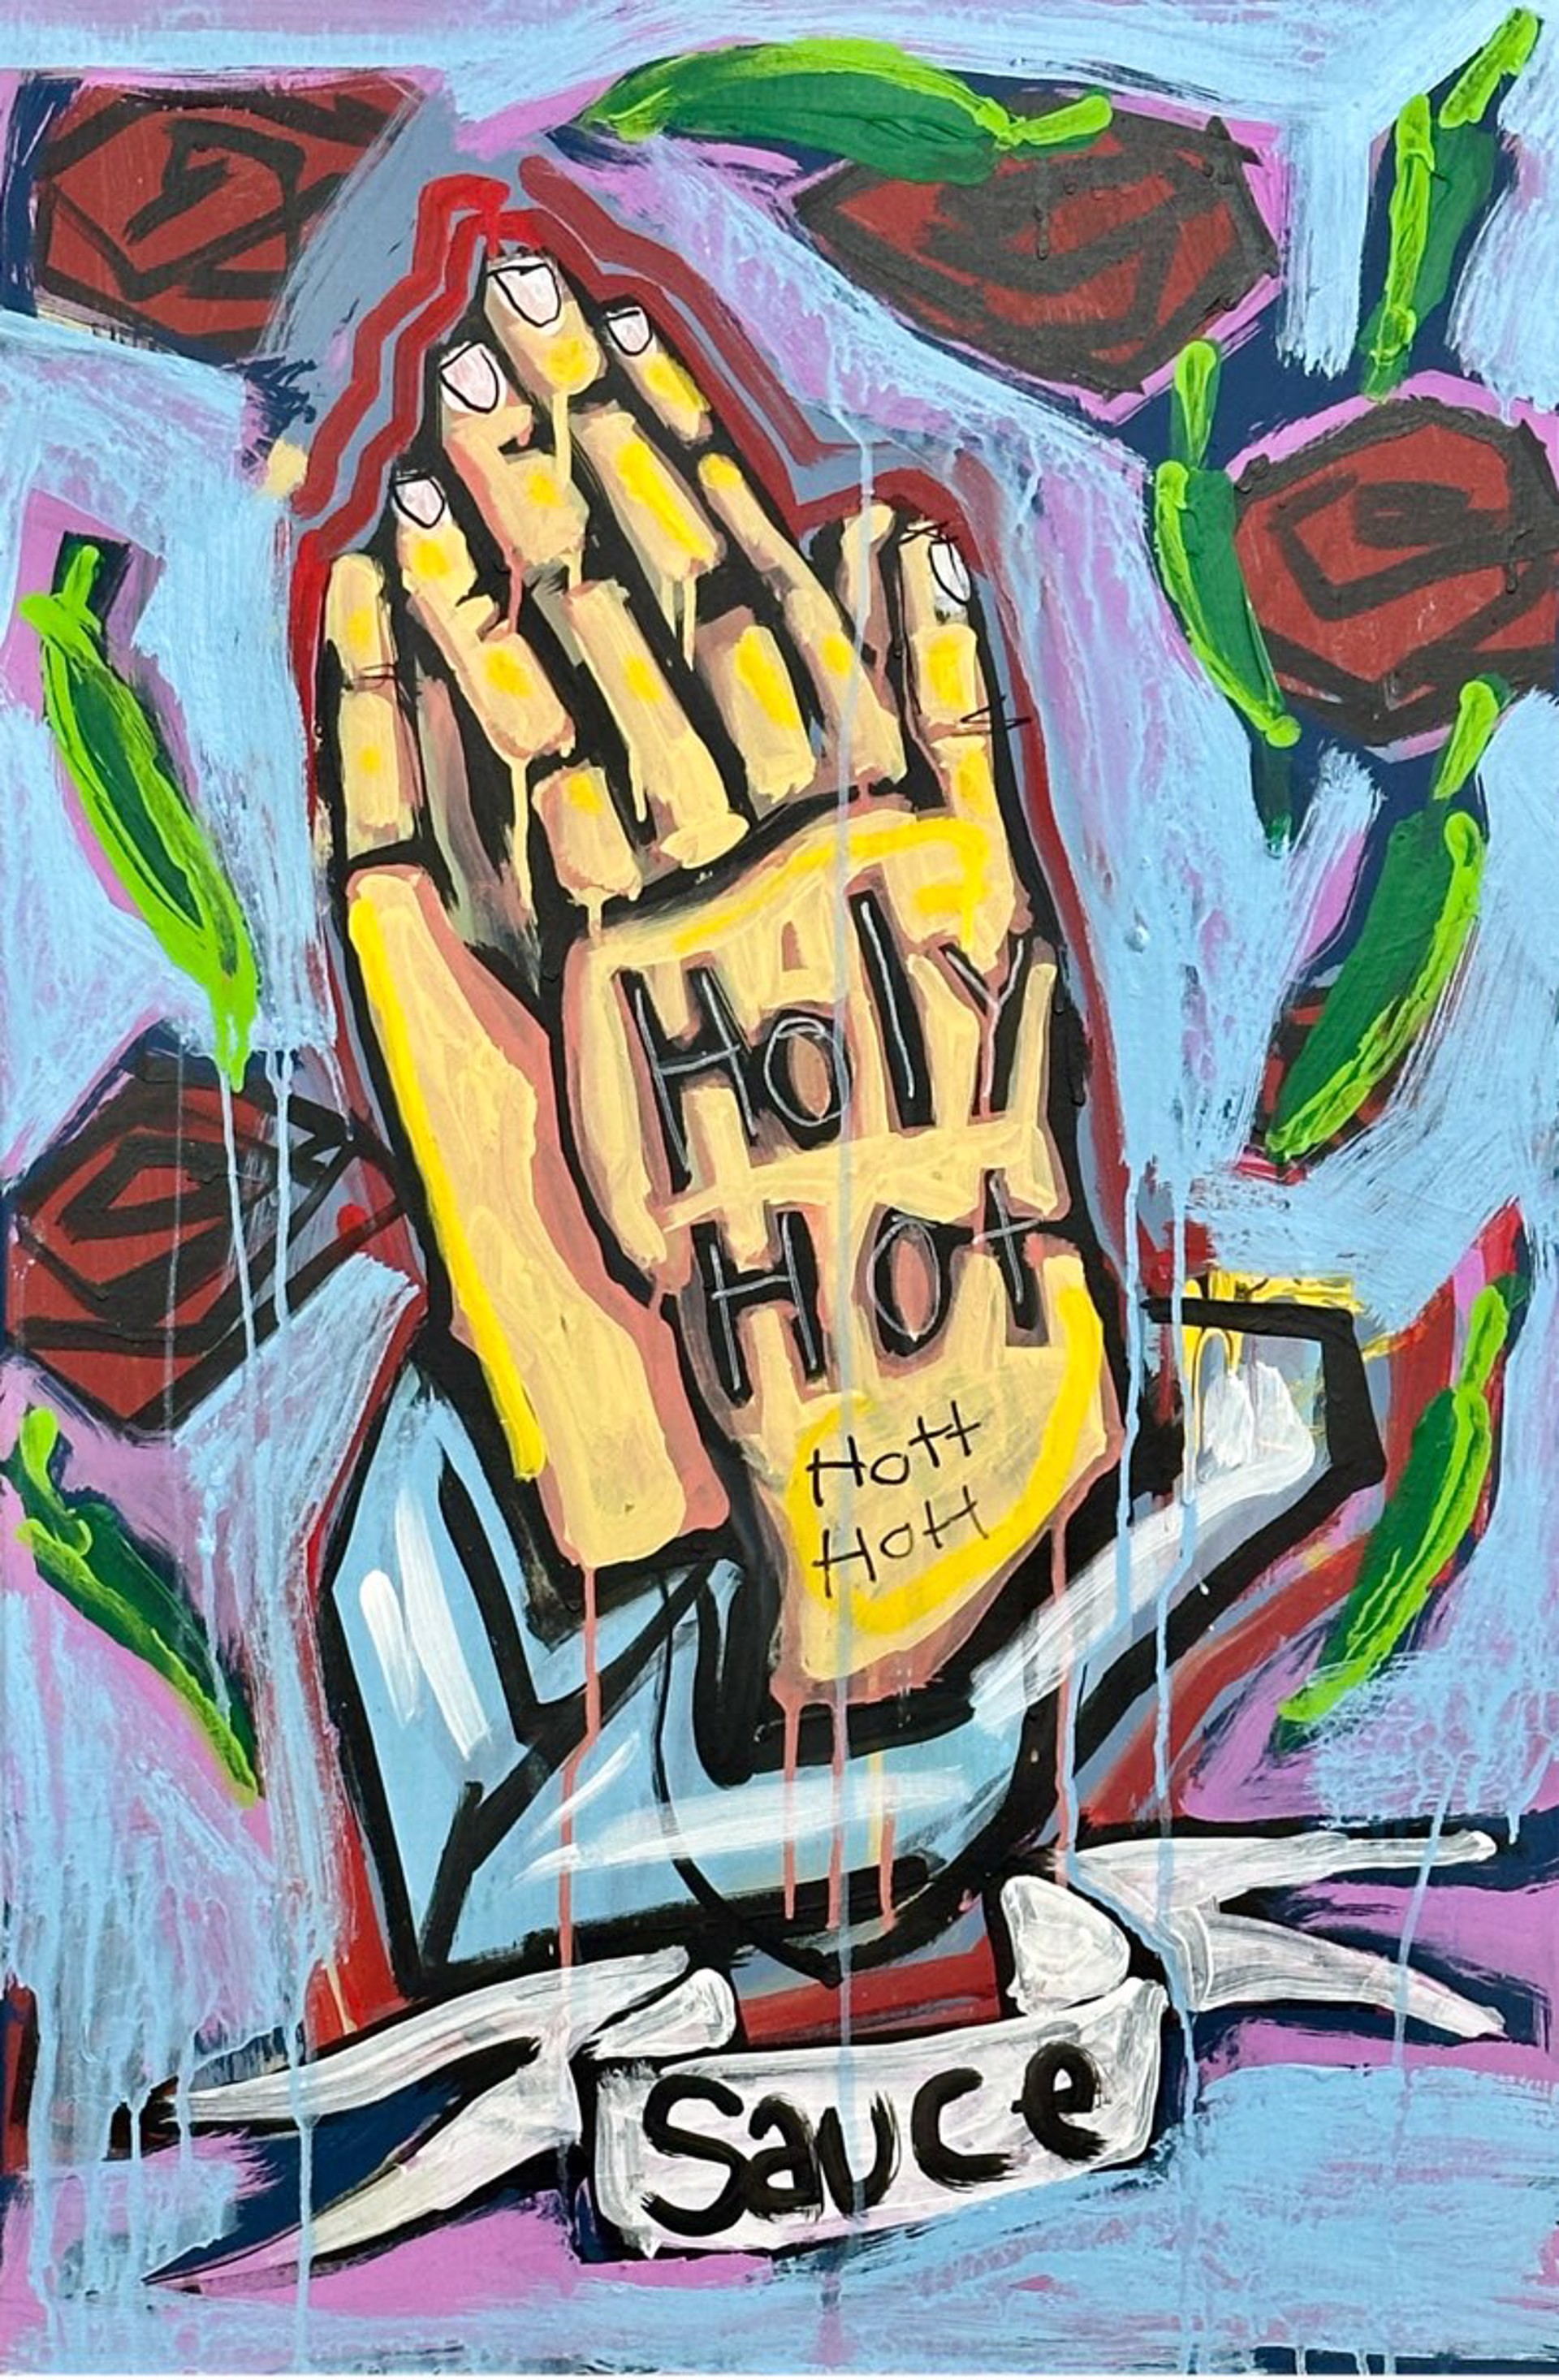 Holy Hot Hott Hott Sauce by John Babbitt